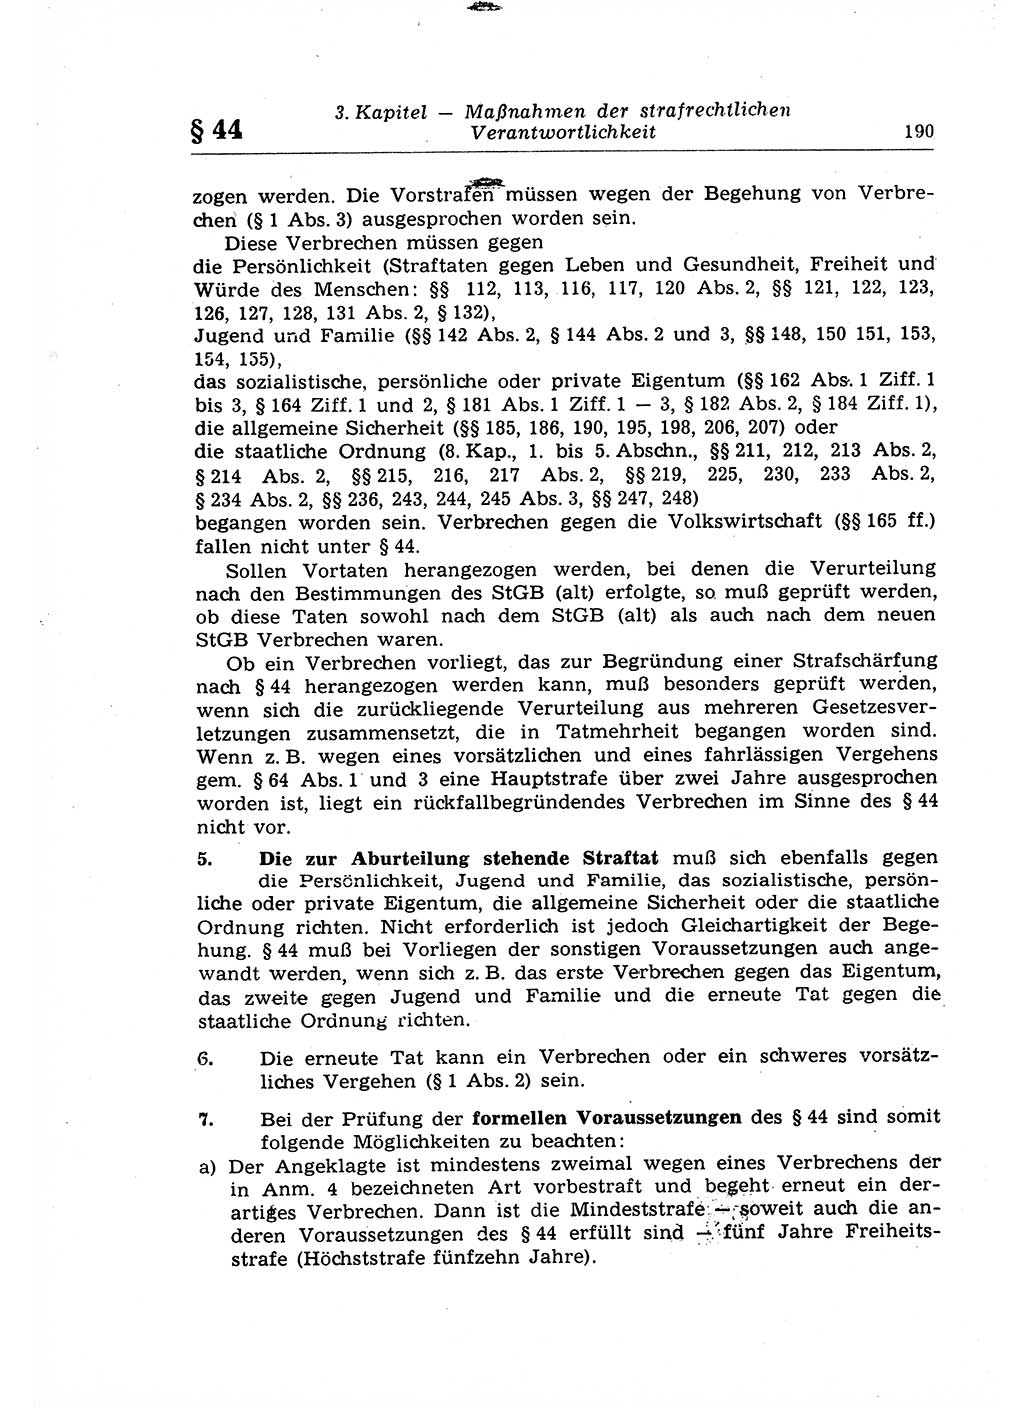 Strafrecht der Deutschen Demokratischen Republik (DDR), Lehrkommentar zum Strafgesetzbuch (StGB), Allgemeiner Teil 1969, Seite 190 (Strafr. DDR Lehrkomm. StGB AT 1969, S. 190)